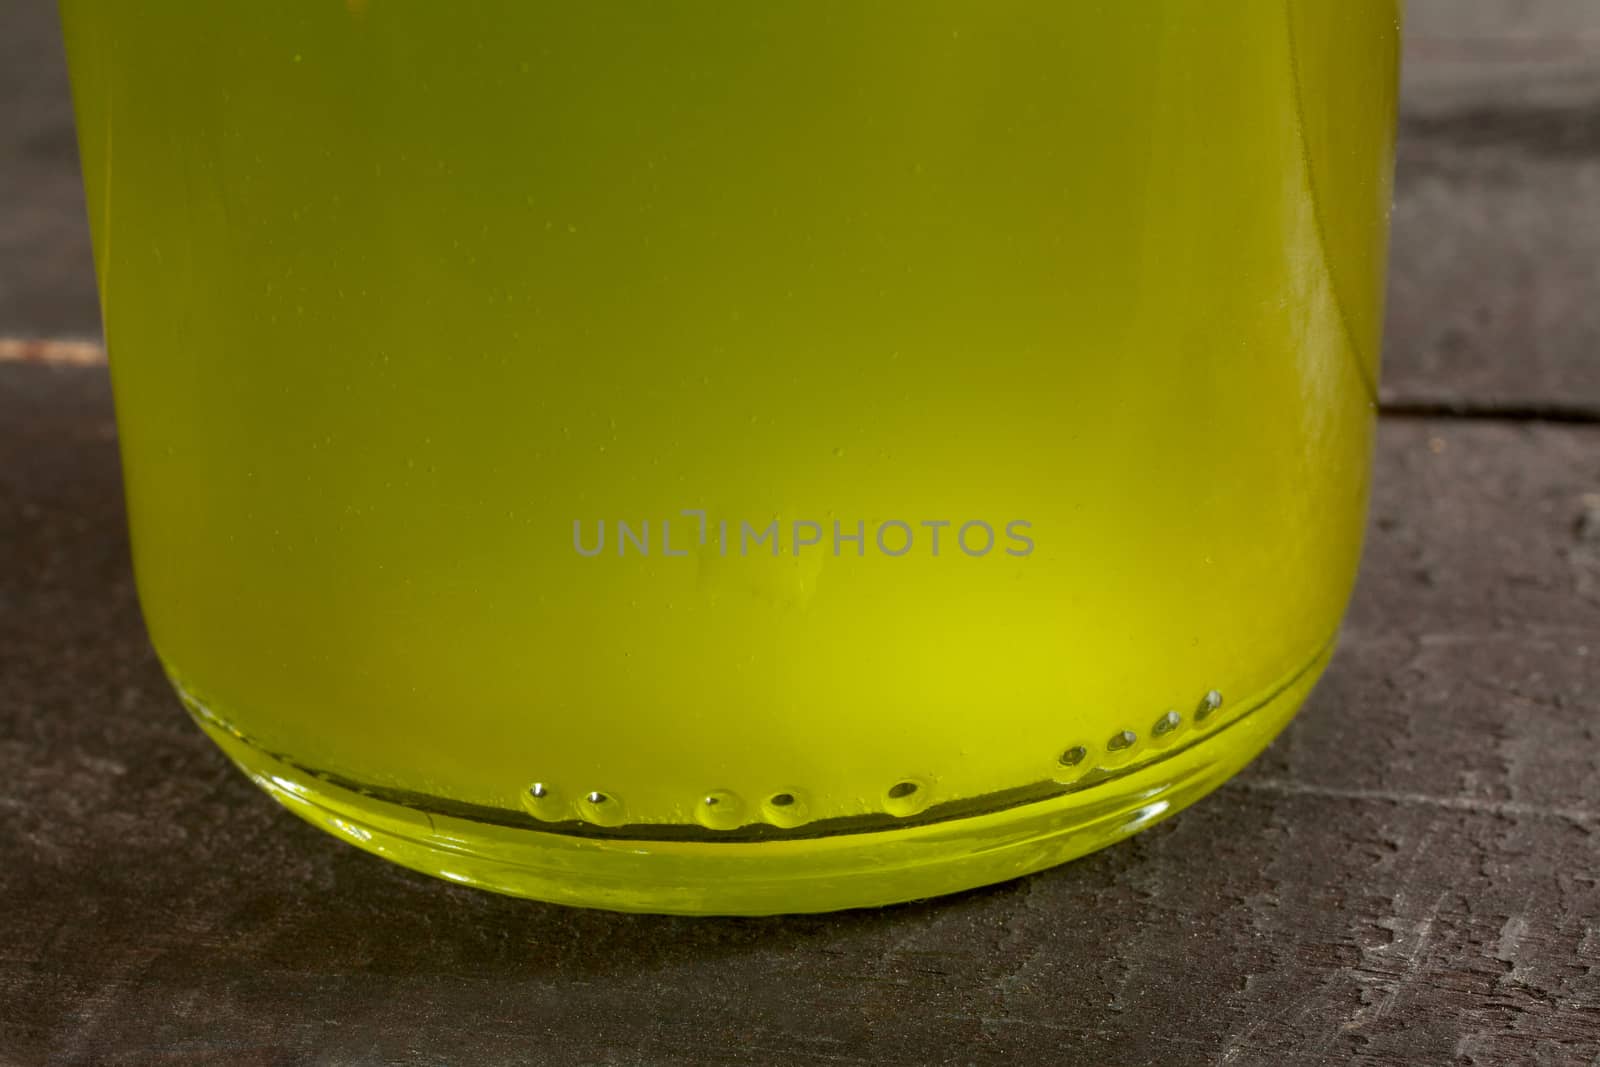 Olive oil bottle on wooden background